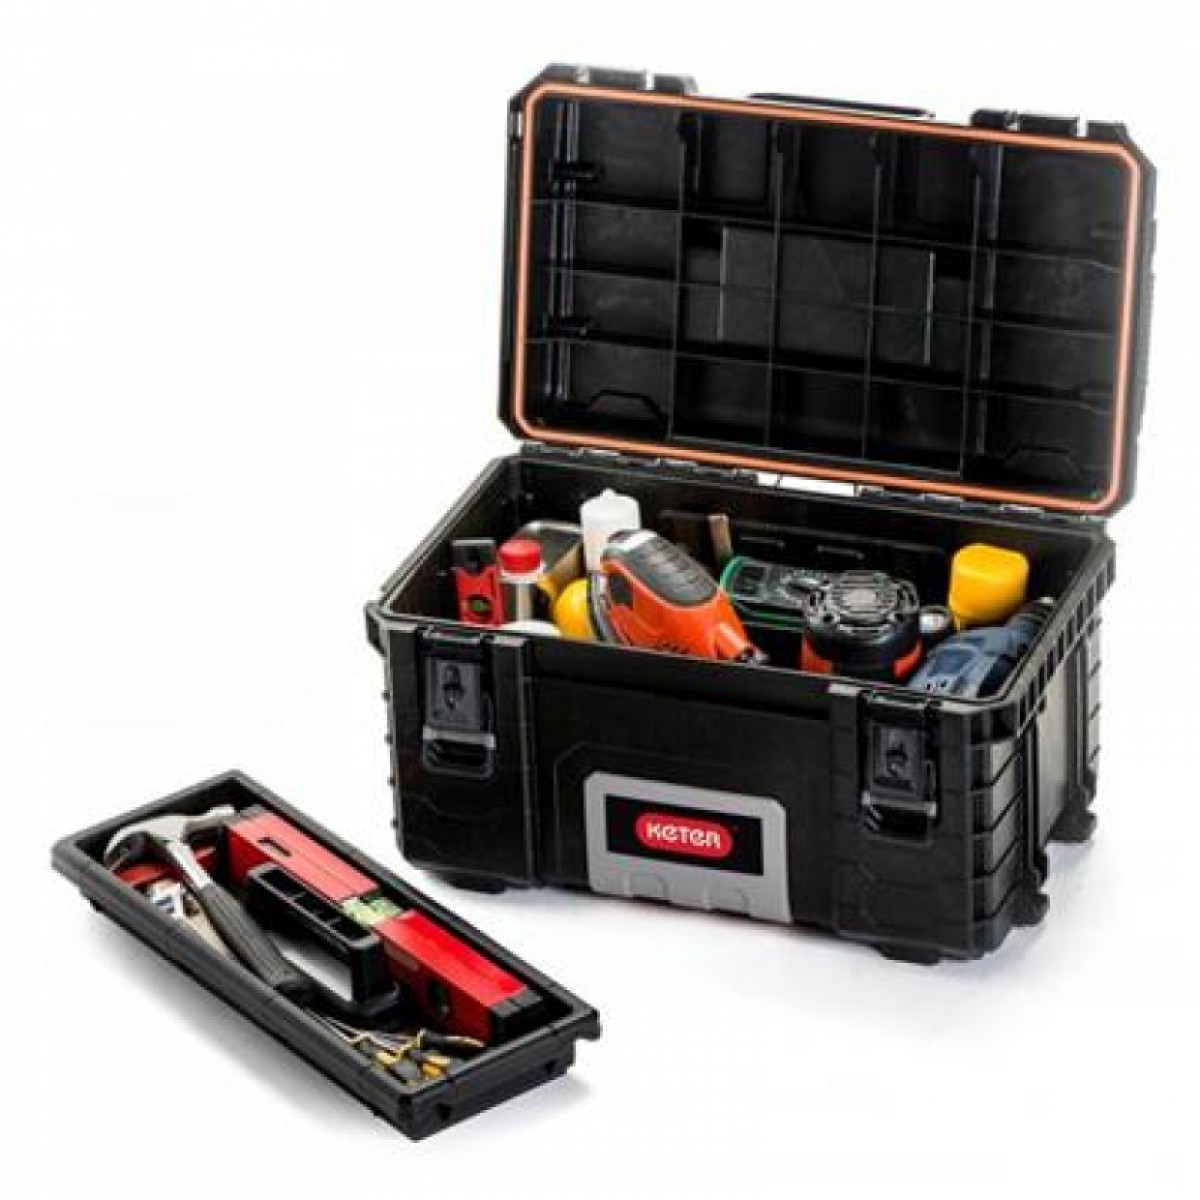 Keter tools. Keter 22 Gear Tool Box 17200382. 22 Gear Tool Box Keter. Ящик Keter Gear Toolbox. Keter ящик для инструмента 38371.